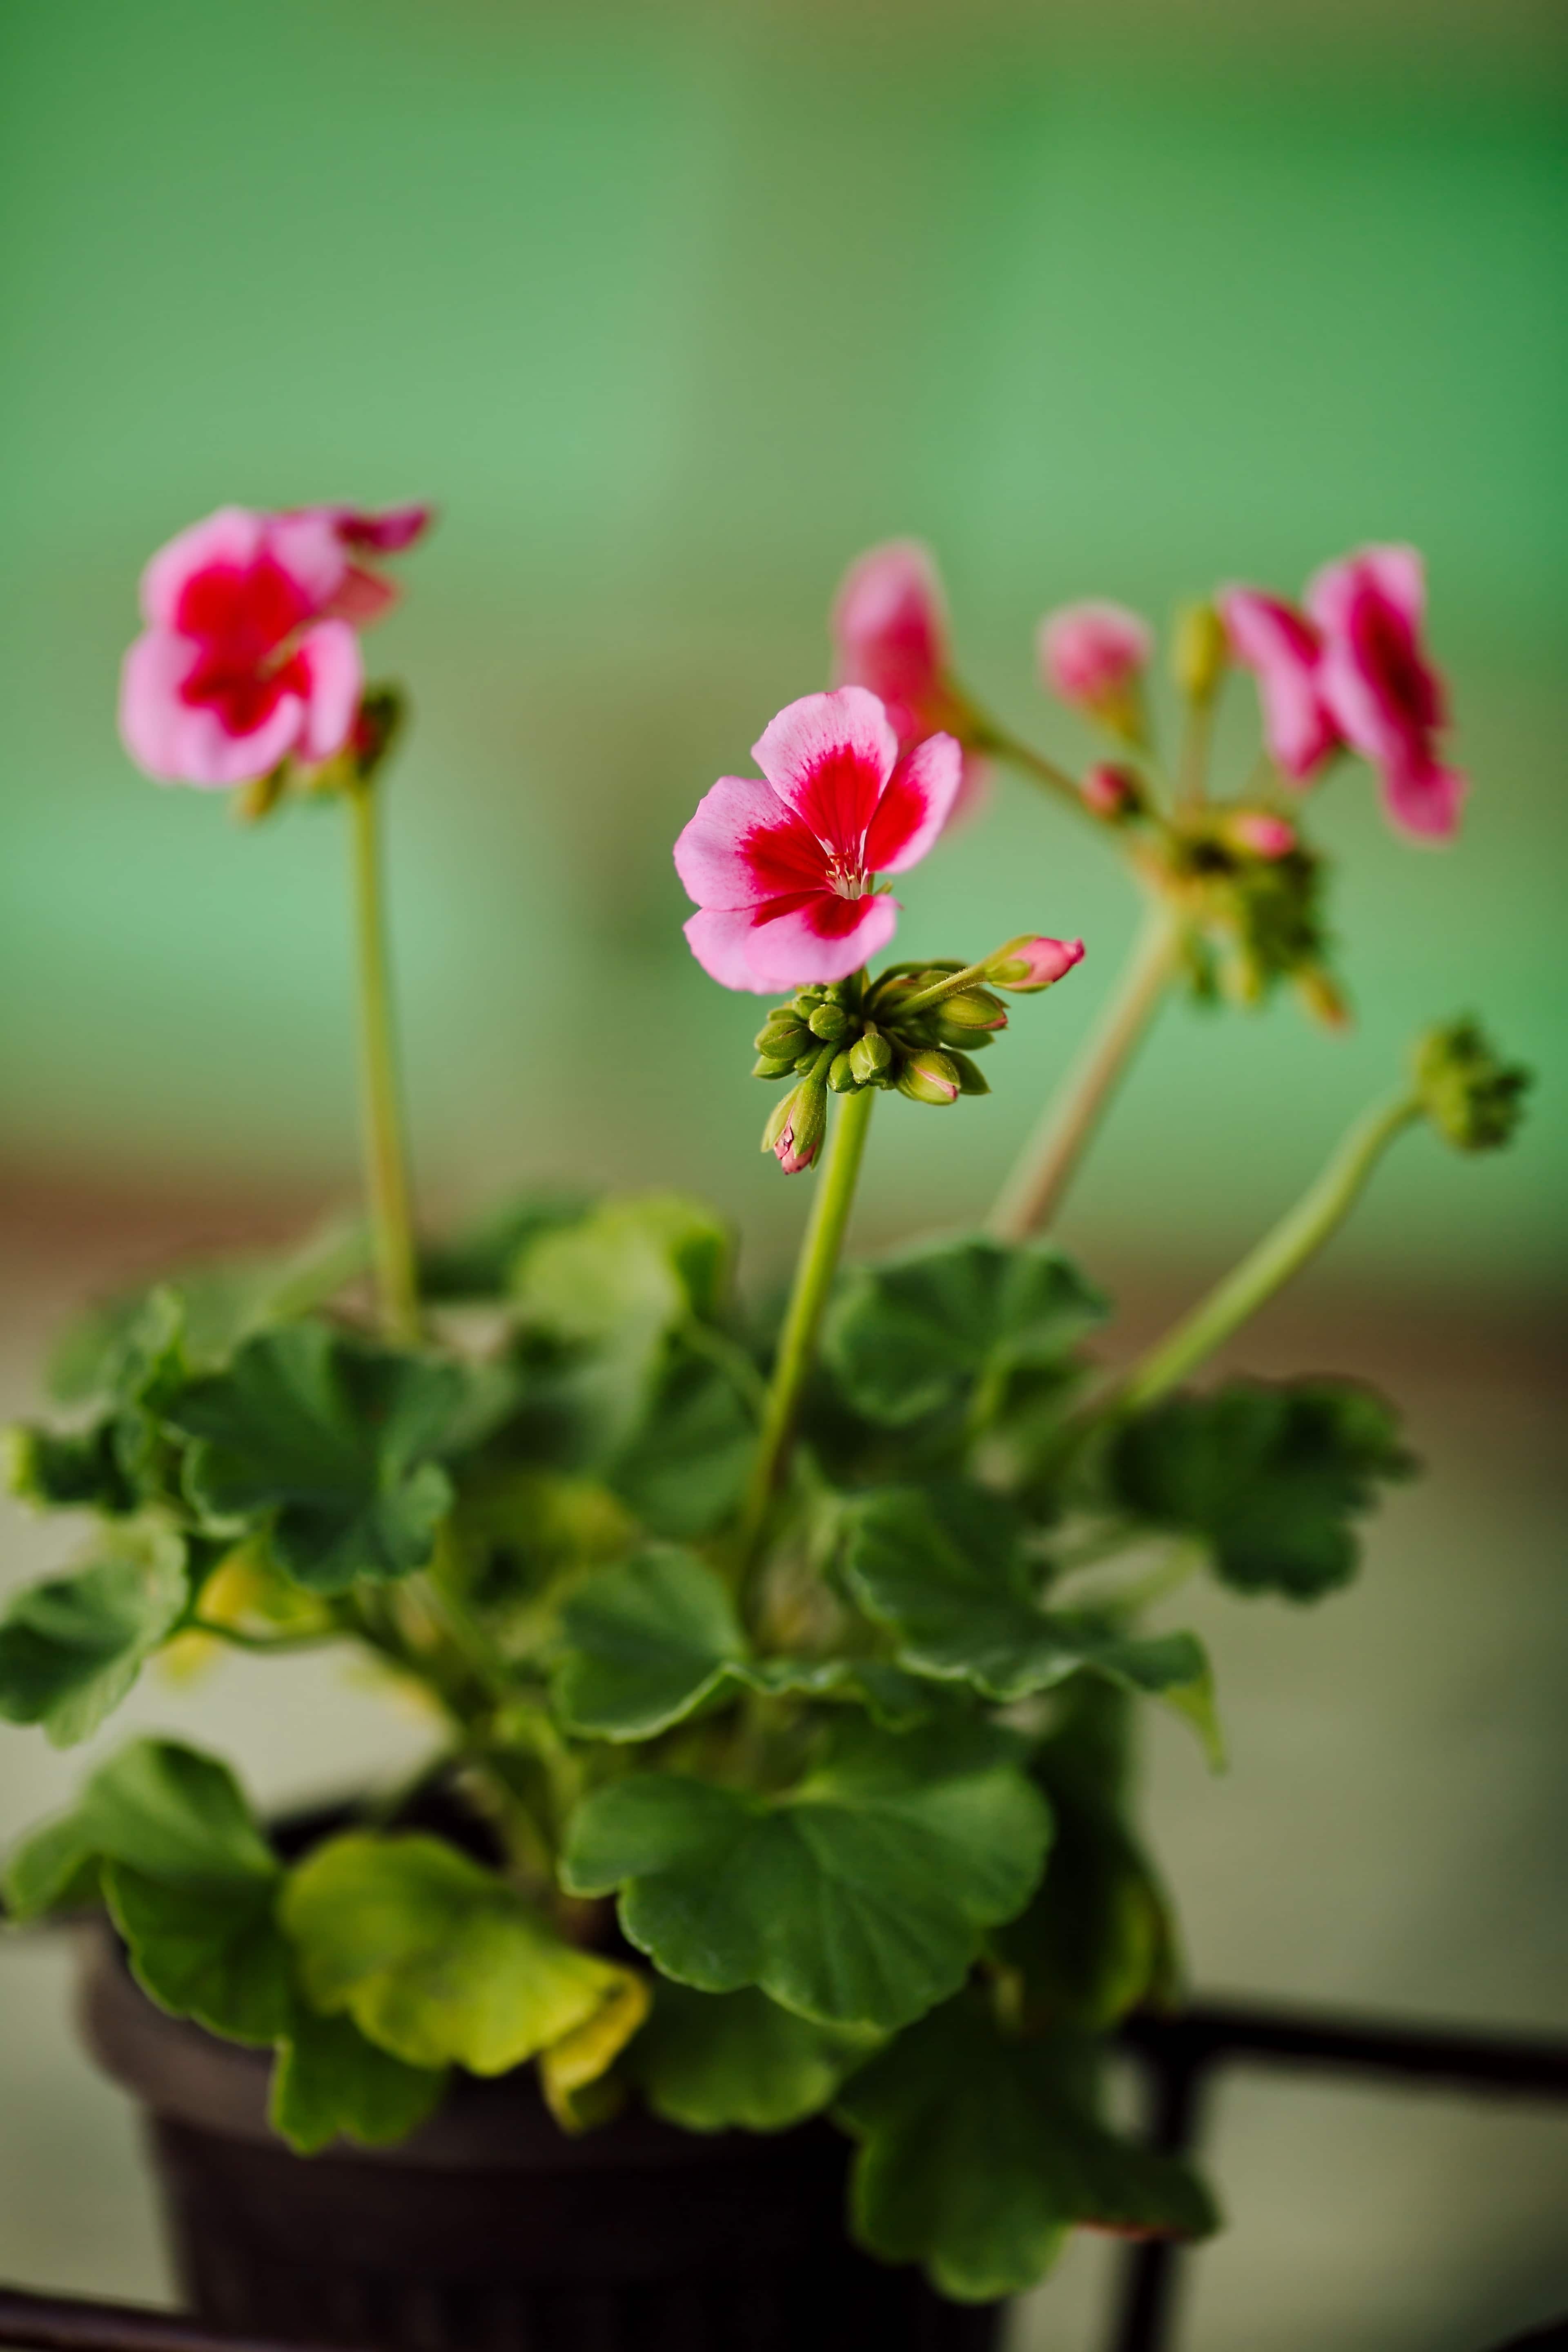 Imagem gratuita: vaso de flor, gerânio, flor em botão, rosado, planta,  verão, flora, erva, jardim, flor